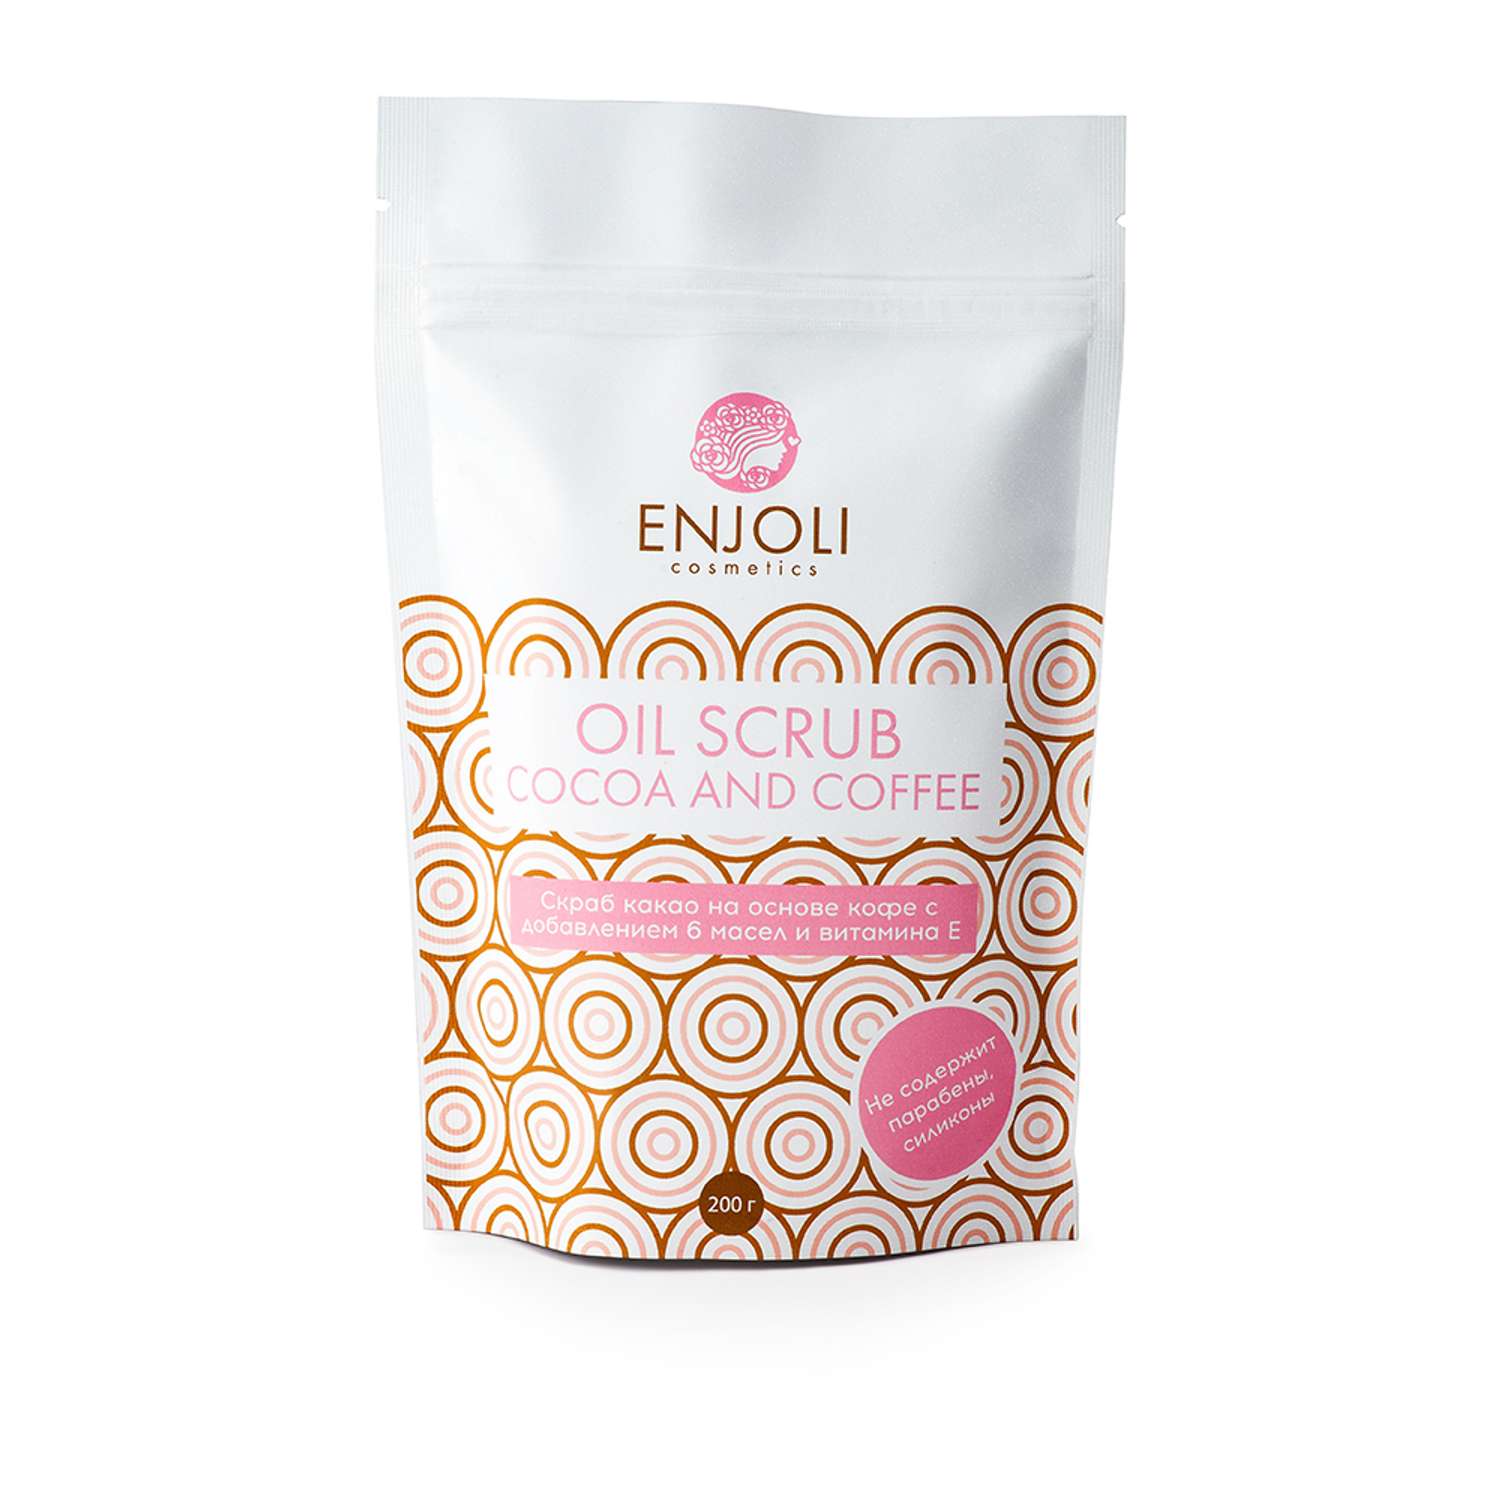 Скраб  ENJOLI на основе какао с добавлением 6 масел и витамина Е - фото 1